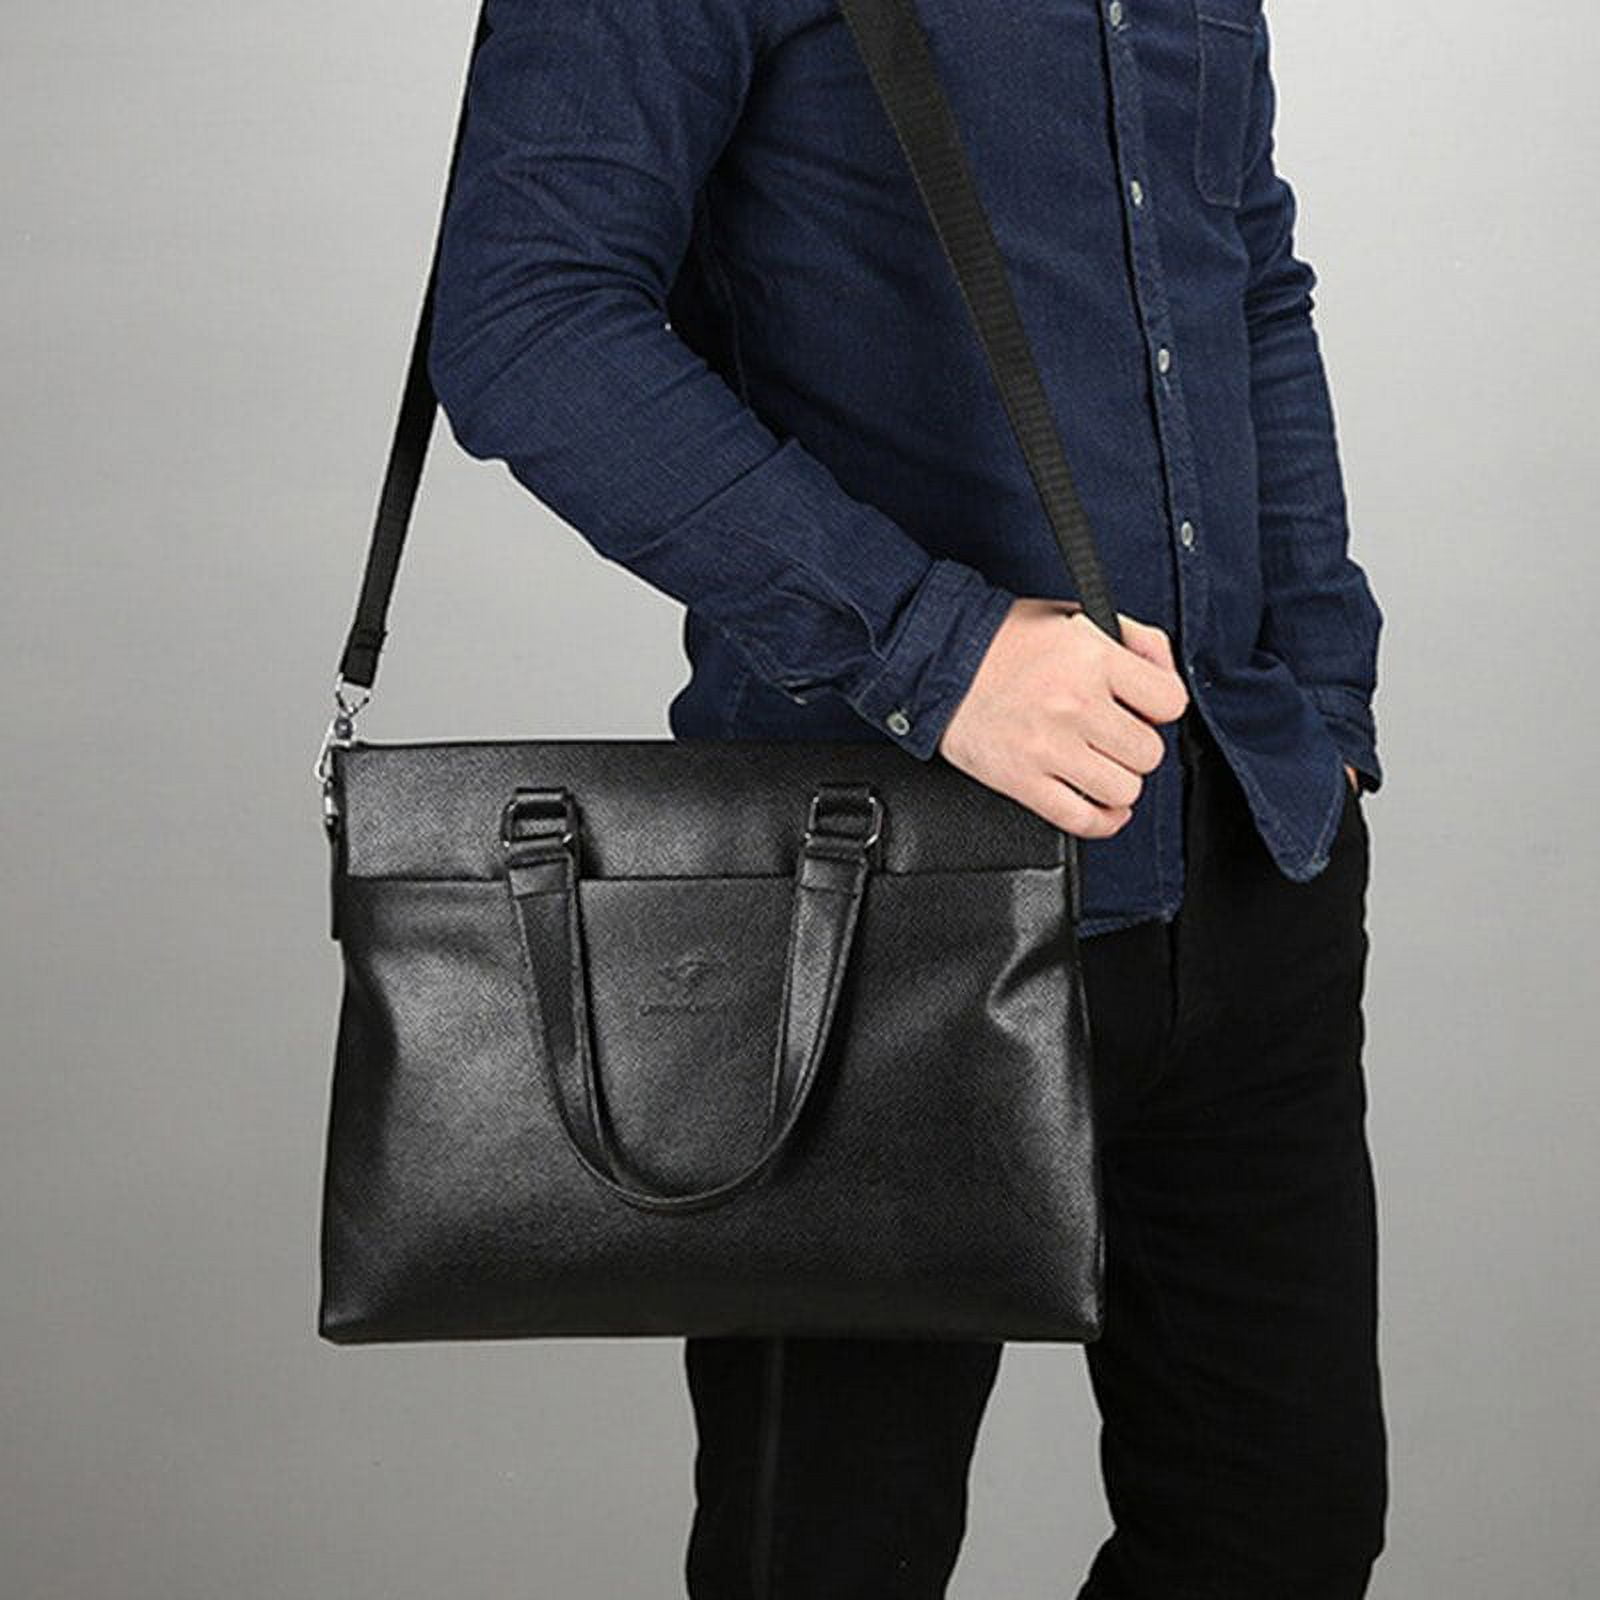 Business Mens Leather Briefcase Bag Handbag Laptop Shoulder Bag Fashion DG